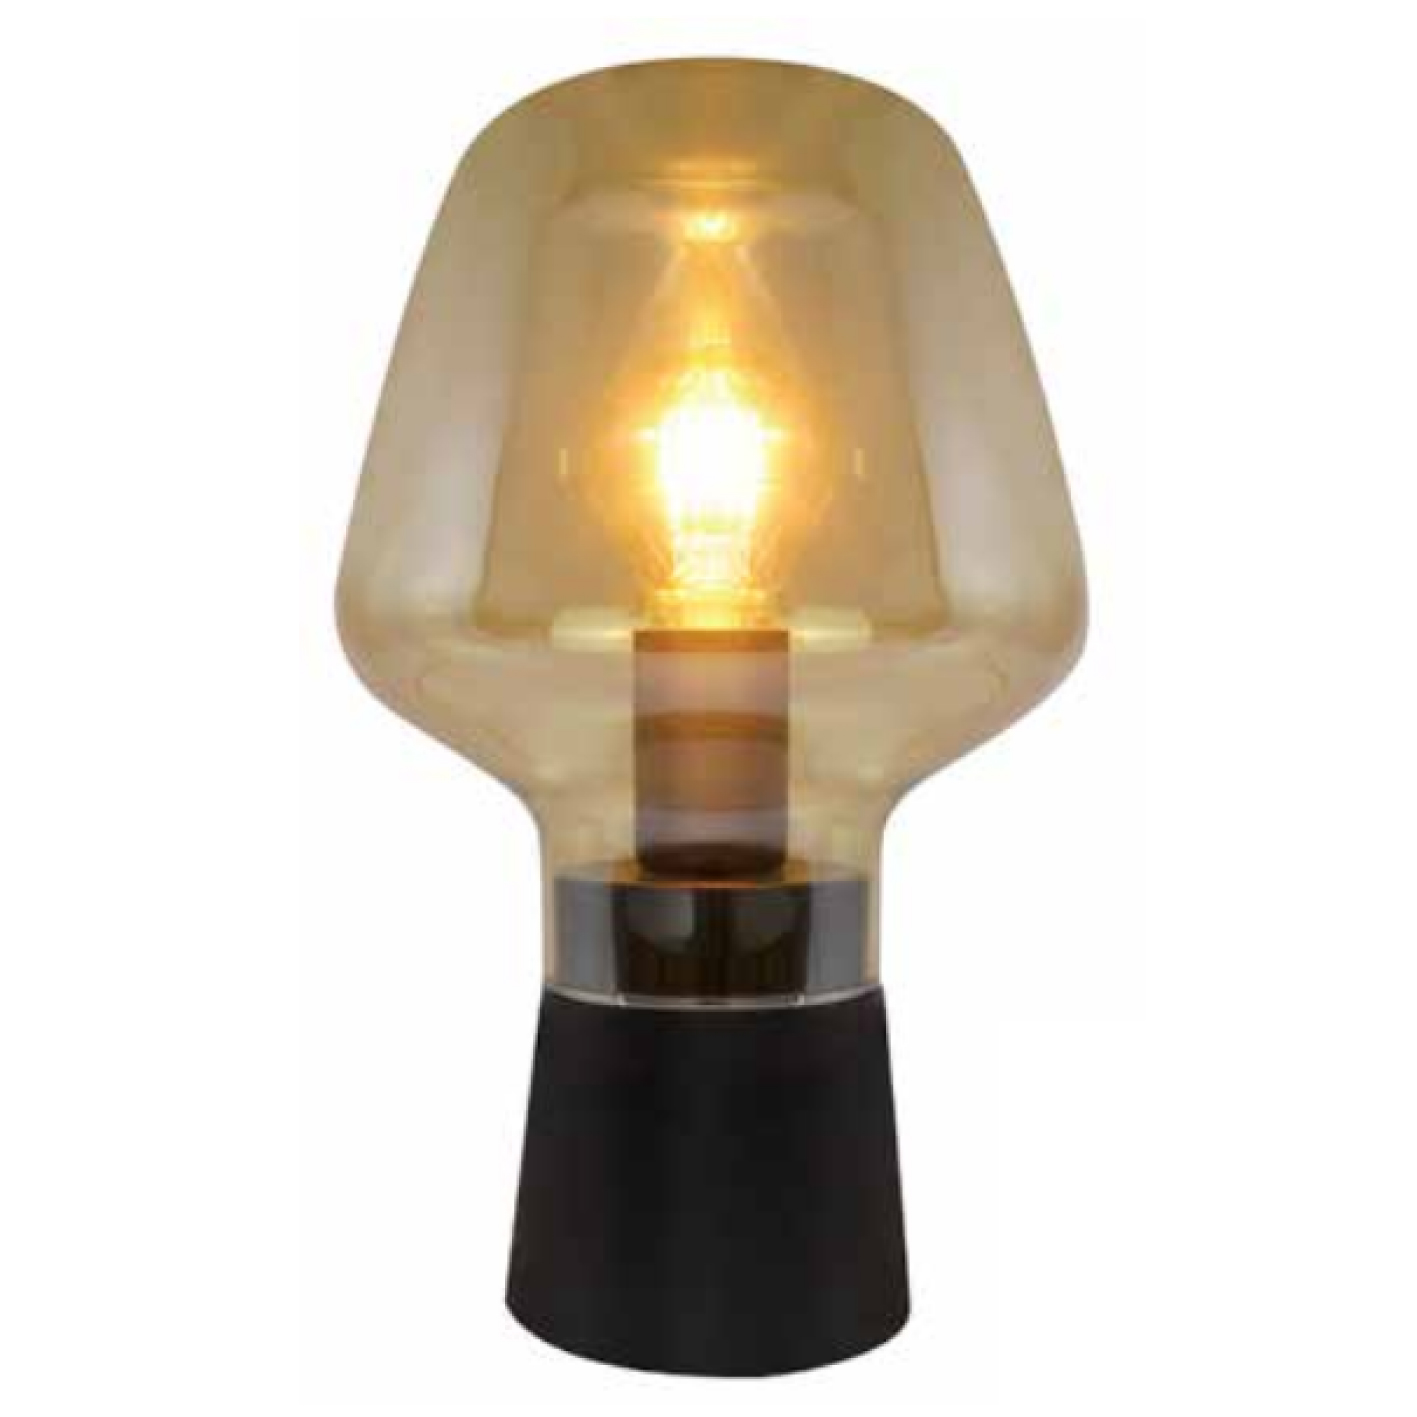 Lampe à poser vintage verre ambré - E27 - Pied en métal noir